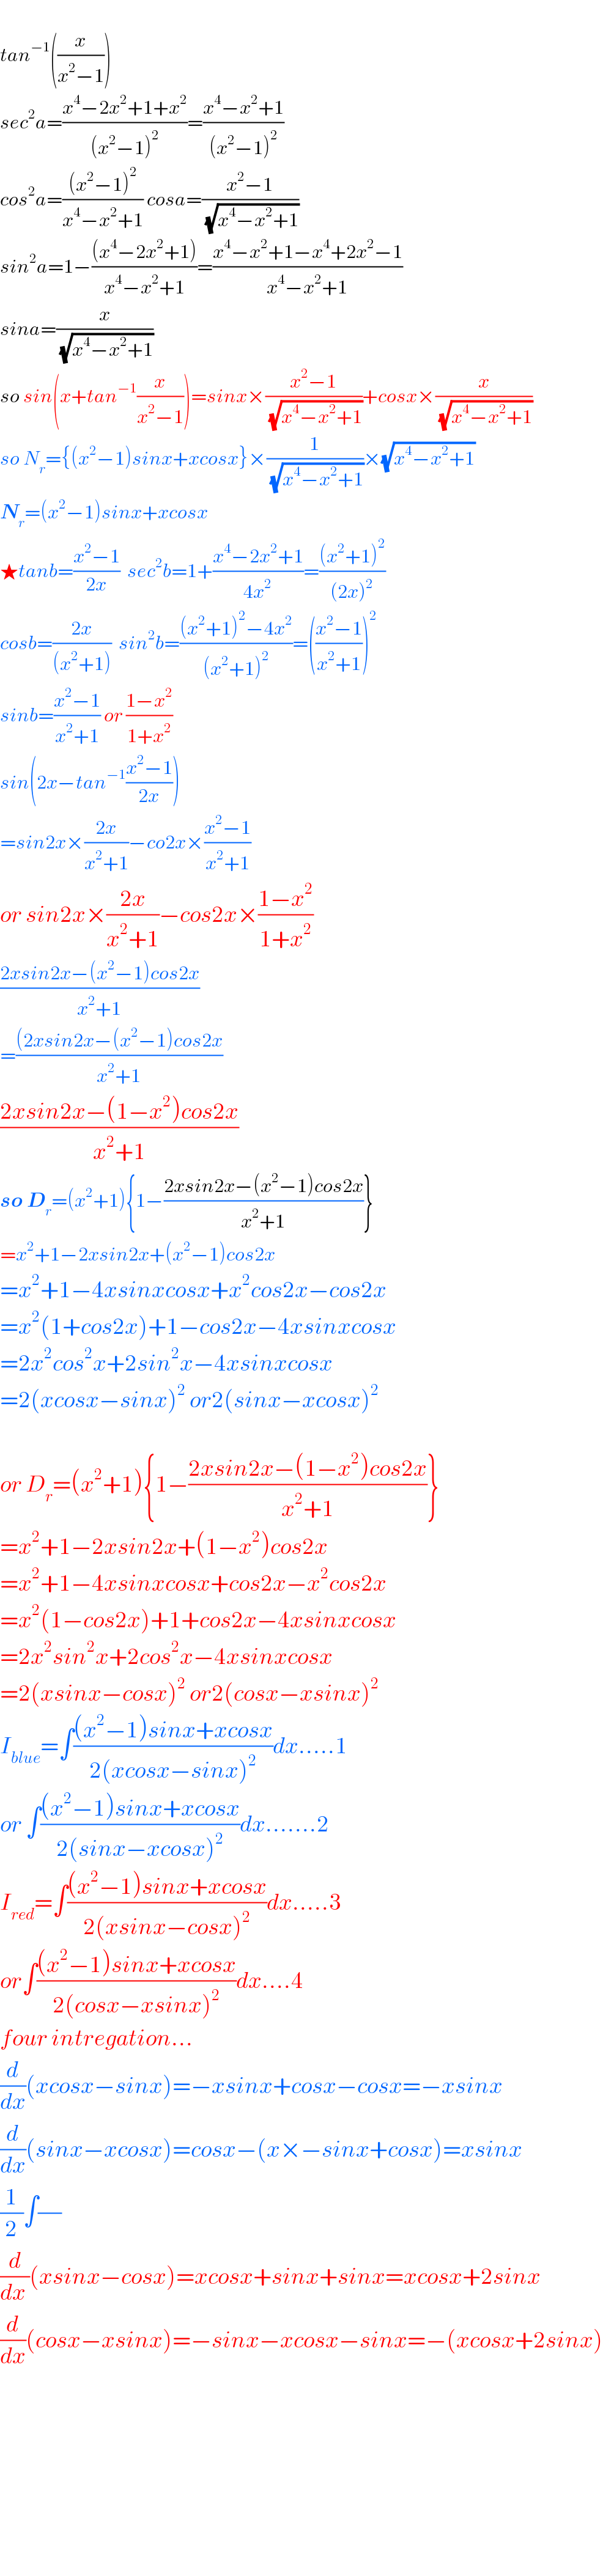   tan^(−1) ((x/(x^2 −1)))  sec^2 a=((x^4 −2x^2 +1+x^2 )/((x^2 −1)^2 ))=((x^4 −x^2 +1)/((x^2 −1)^2 ))  cos^2 a=(((x^2 −1)^2 )/(x^4 −x^2 +1)) cosa=((x^2 −1)/(√(x^4 −x^2 +1)))  sin^2 a=1−(((x^4 −2x^2 +1))/(x^4 −x^2 +1))=((x^4 −x^2 +1−x^4 +2x^2 −1)/(x^4 −x^2 +1))  sina=(x/(√(x^4 −x^2 +1)))  so sin(x+tan^(−1) (x/(x^2 −1)))=sinx×((x^2 −1)/(√(x^4 −x^2 +1)))+cosx×(x/(√(x^4 −x^2 +1)))  so N_r ={(x^2 −1)sinx+xcosx}×(1/(√(x^4 −x^2 +1)))×(√(x^4 −x^2 +1))  N_r =(x^2 −1)sinx+xcosx  ★tanb=((x^2 −1)/(2x))  sec^2 b=1+((x^4 −2x^2 +1)/(4x^2 ))=(((x^2 +1)^2 )/((2x)^2 ))  cosb=((2x)/((x^2 +1)))  sin^2 b=(((x^2 +1)^2 −4x^2 )/((x^2 +1)^2 ))=(((x^2 −1)/(x^2 +1)))^2   sinb=((x^2 −1)/(x^2 +1)) or ((1−x^2 )/(1+x^2 ))  sin(2x−tan^(−1) ((x^2 −1)/(2x)))  =sin2x×((2x)/(x^2 +1))−co2x×((x^2 −1)/(x^2 +1))  or sin2x×((2x)/(x^2 +1))−cos2x×((1−x^2 )/(1+x^2 ))  ((2xsin2x−(x^2 −1)cos2x)/(x^2 +1))  =(((2xsin2x−(x^2 −1)cos2x)/(x^2 +1))  ((2xsin2x−(1−x^2 )cos2x)/(x^2 +1))  so D_r =(x^2 +1){1−((2xsin2x−(x^2 −1)cos2x)/(x^2 +1))}  =x^2 +1−2xsin2x+(x^2 −1)cos2x  =x^2 +1−4xsinxcosx+x^2 cos2x−cos2x  =x^2 (1+cos2x)+1−cos2x−4xsinxcosx  =2x^2 cos^2 x+2sin^2 x−4xsinxcosx  =2(xcosx−sinx)^2  or2(sinx−xcosx)^2     or D_r =(x^2 +1){1−((2xsin2x−(1−x^2 )cos2x)/(x^2 +1))}  =x^2 +1−2xsin2x+(1−x^2 )cos2x  =x^2 +1−4xsinxcosx+cos2x−x^2 cos2x  =x^2 (1−cos2x)+1+cos2x−4xsinxcosx  =2x^2 sin^2 x+2cos^2 x−4xsinxcosx  =2(xsinx−cosx)^2  or2(cosx−xsinx)^2   I_(blue) =∫(((x^2 −1)sinx+xcosx)/(2(xcosx−sinx)^2 ))dx.....1  or ∫(((x^2 −1)sinx+xcosx)/(2(sinx−xcosx)^2 ))dx.......2  I_(red) =∫(((x^2 −1)sinx+xcosx)/(2(xsinx−cosx)^2 ))dx.....3  or∫(((x^2 −1)sinx+xcosx)/(2(cosx−xsinx)^2 ))dx....4  four intregation...  (d/dx)(xcosx−sinx)=−xsinx+cosx−cosx=−xsinx  (d/dx)(sinx−xcosx)=cosx−(x×−sinx+cosx)=xsinx  (1/2)∫(/)  (d/(dx ))(xsinx−cosx)=xcosx+sinx+sinx=xcosx+2sinx  (d/dx)(cosx−xsinx)=−sinx−xcosx−sinx=−(xcosx+2sinx)              